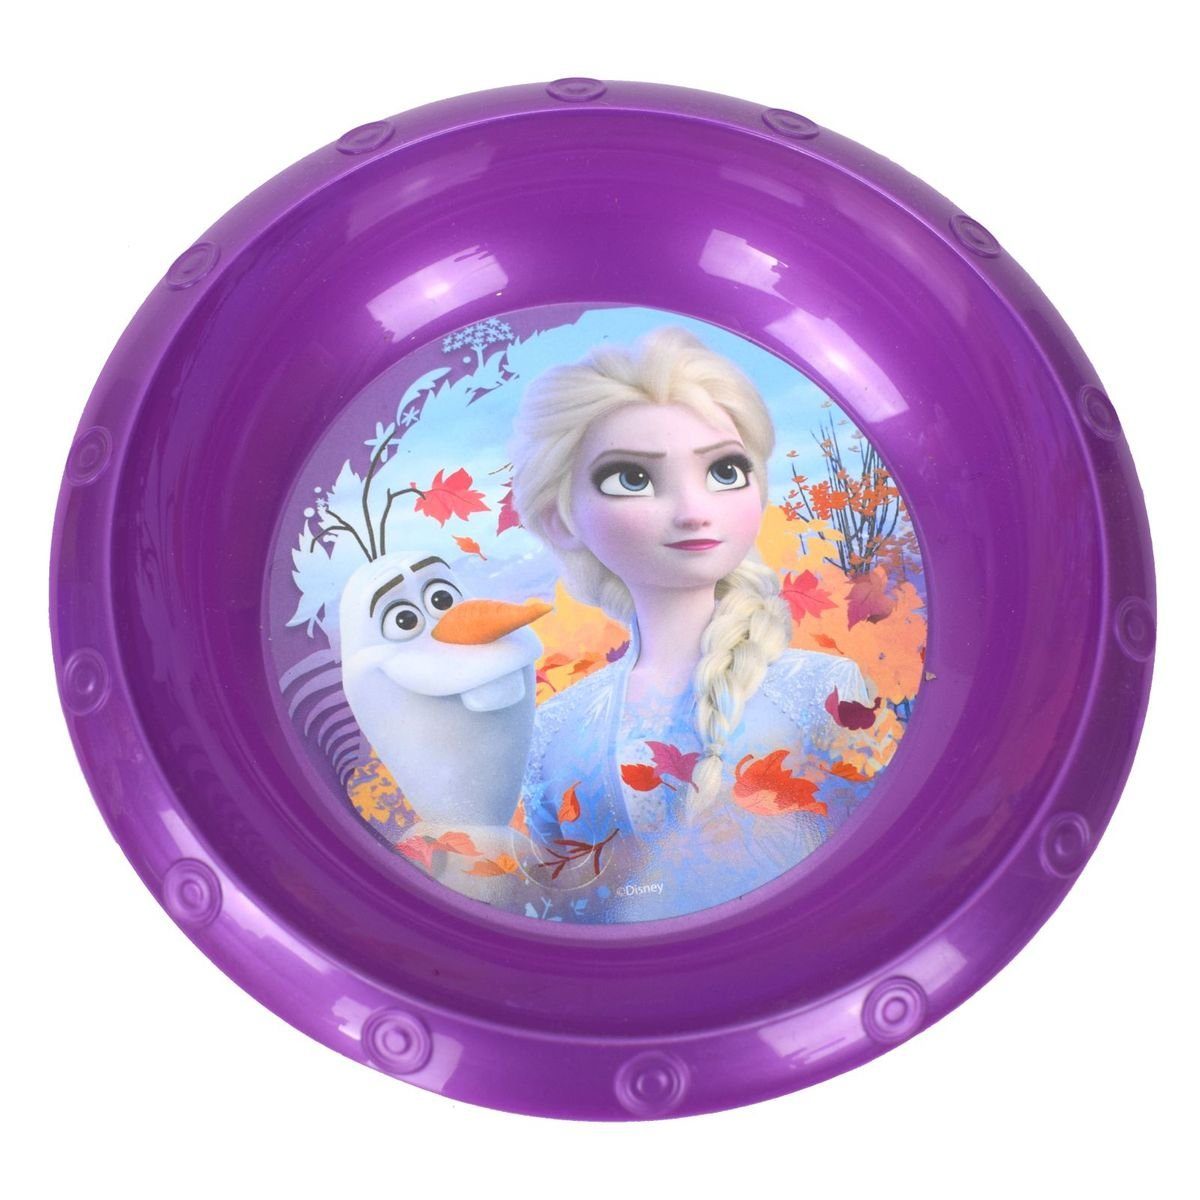 Stor Geschirr-Set Plastikschüssel Ø17 für Kinder Disney Frozen oder Peppa Wutz, Kunststoff Lila